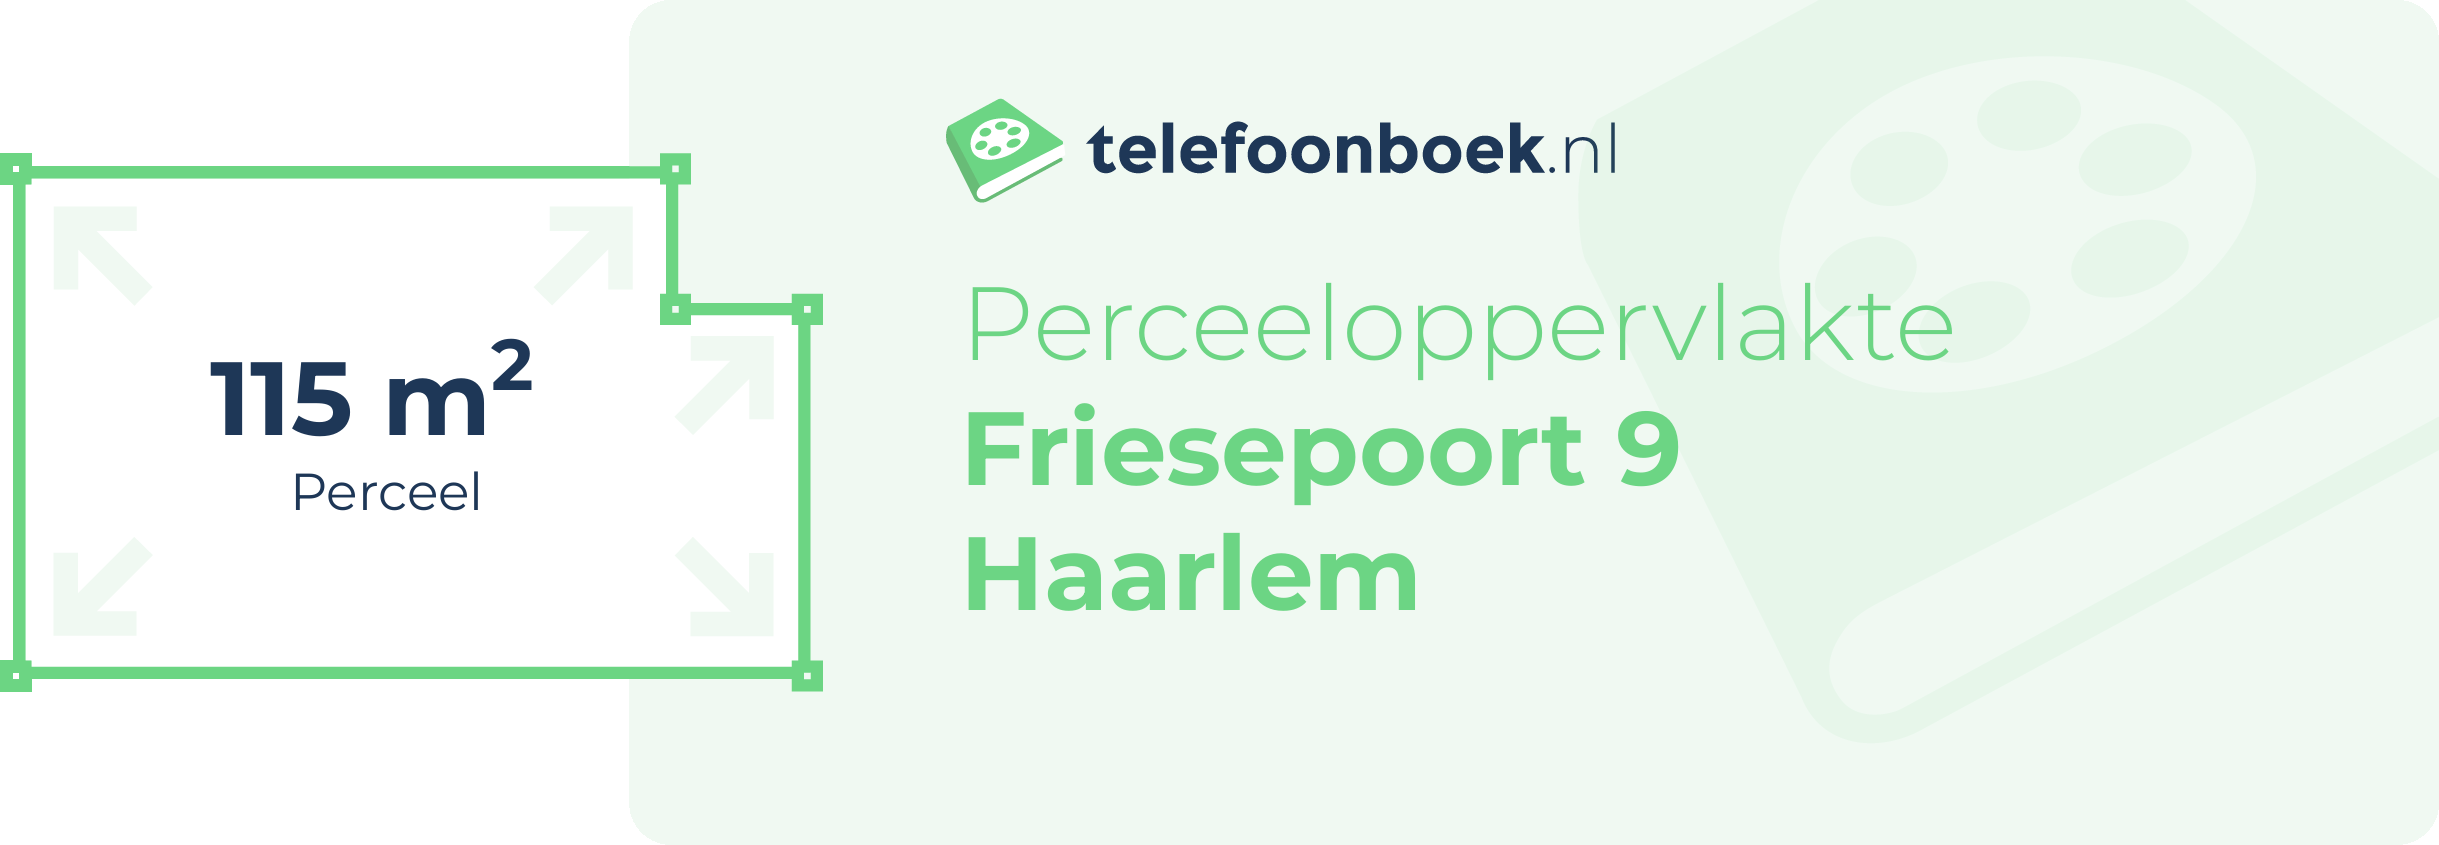 Perceeloppervlakte Friesepoort 9 Haarlem